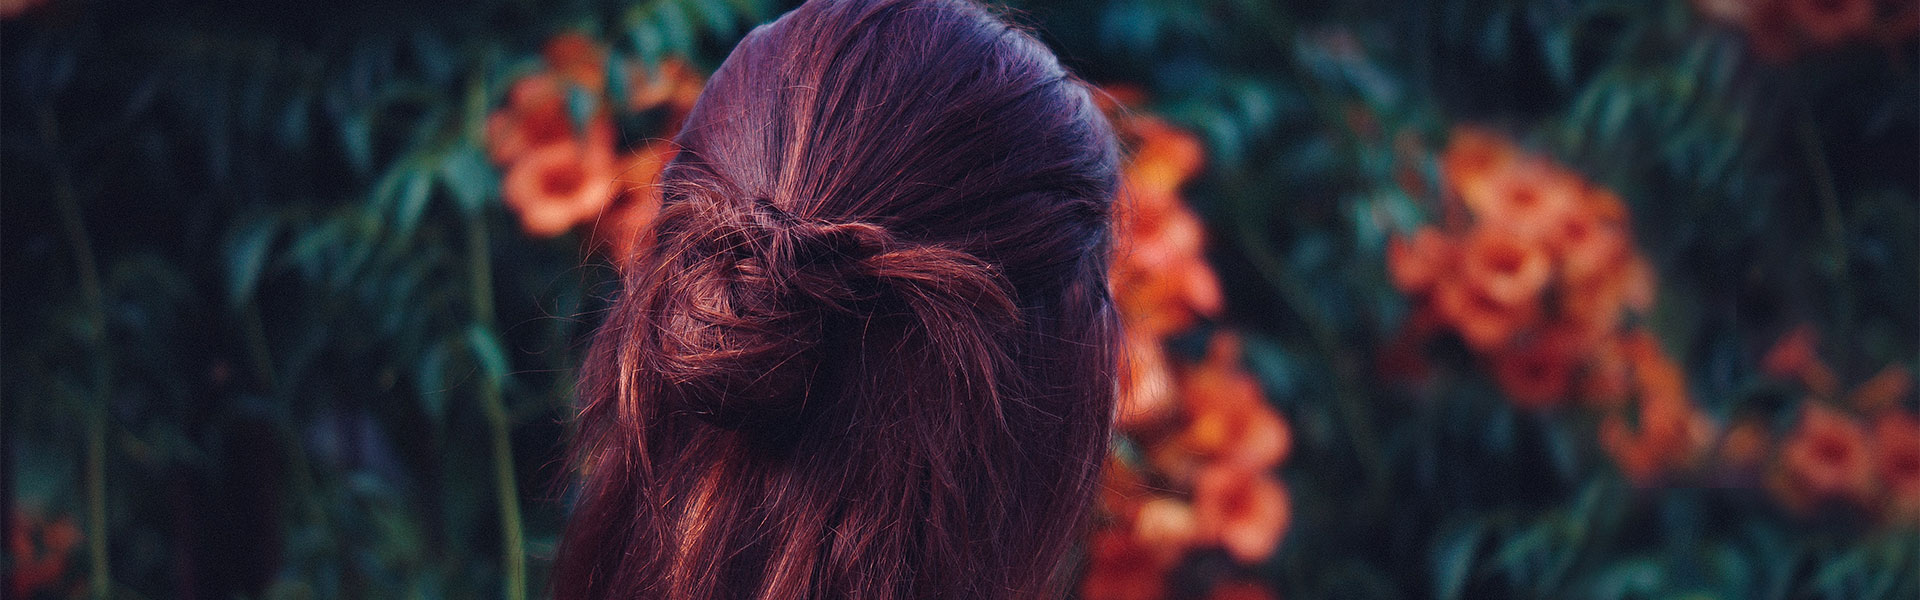 Frau mit langen roten Haaren von hinten vor einer Blumenhecke